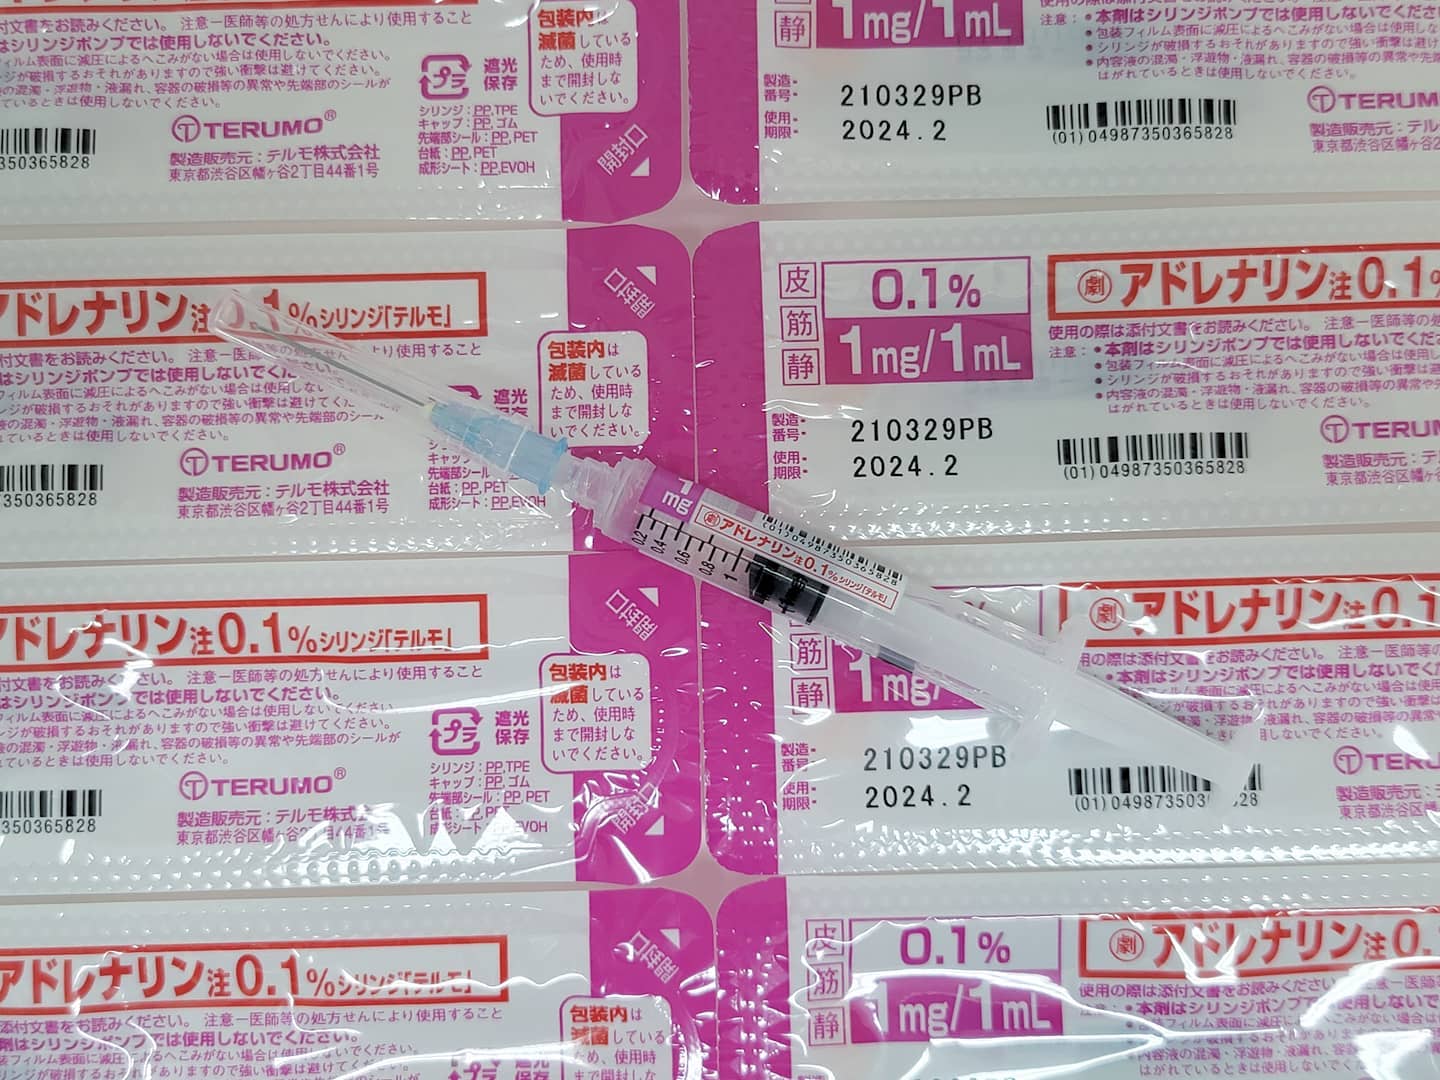 新型コロナワクチン接種会場としての安全対策